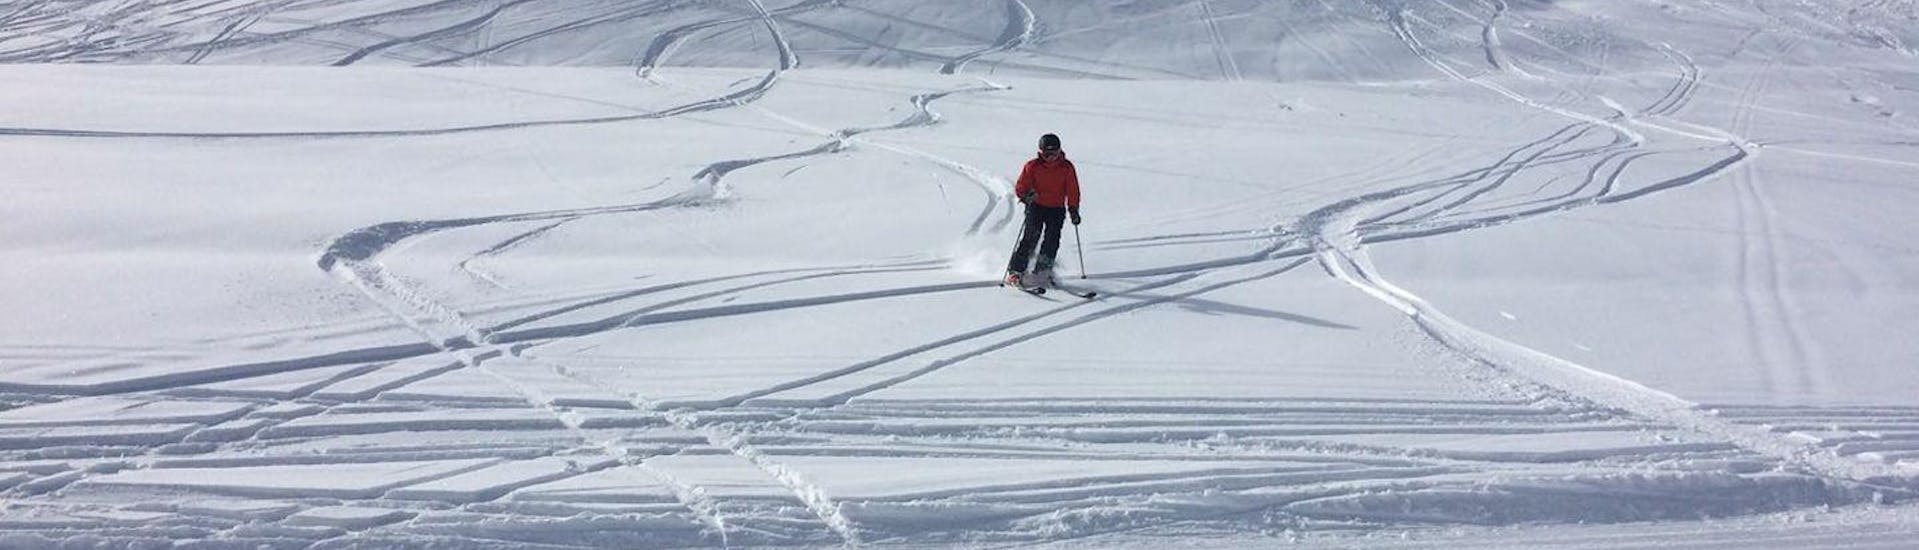 Cours particulier de ski Adultes pour Tous niveaux avec Skischule Ingrid Salvenmoser Scheffau.